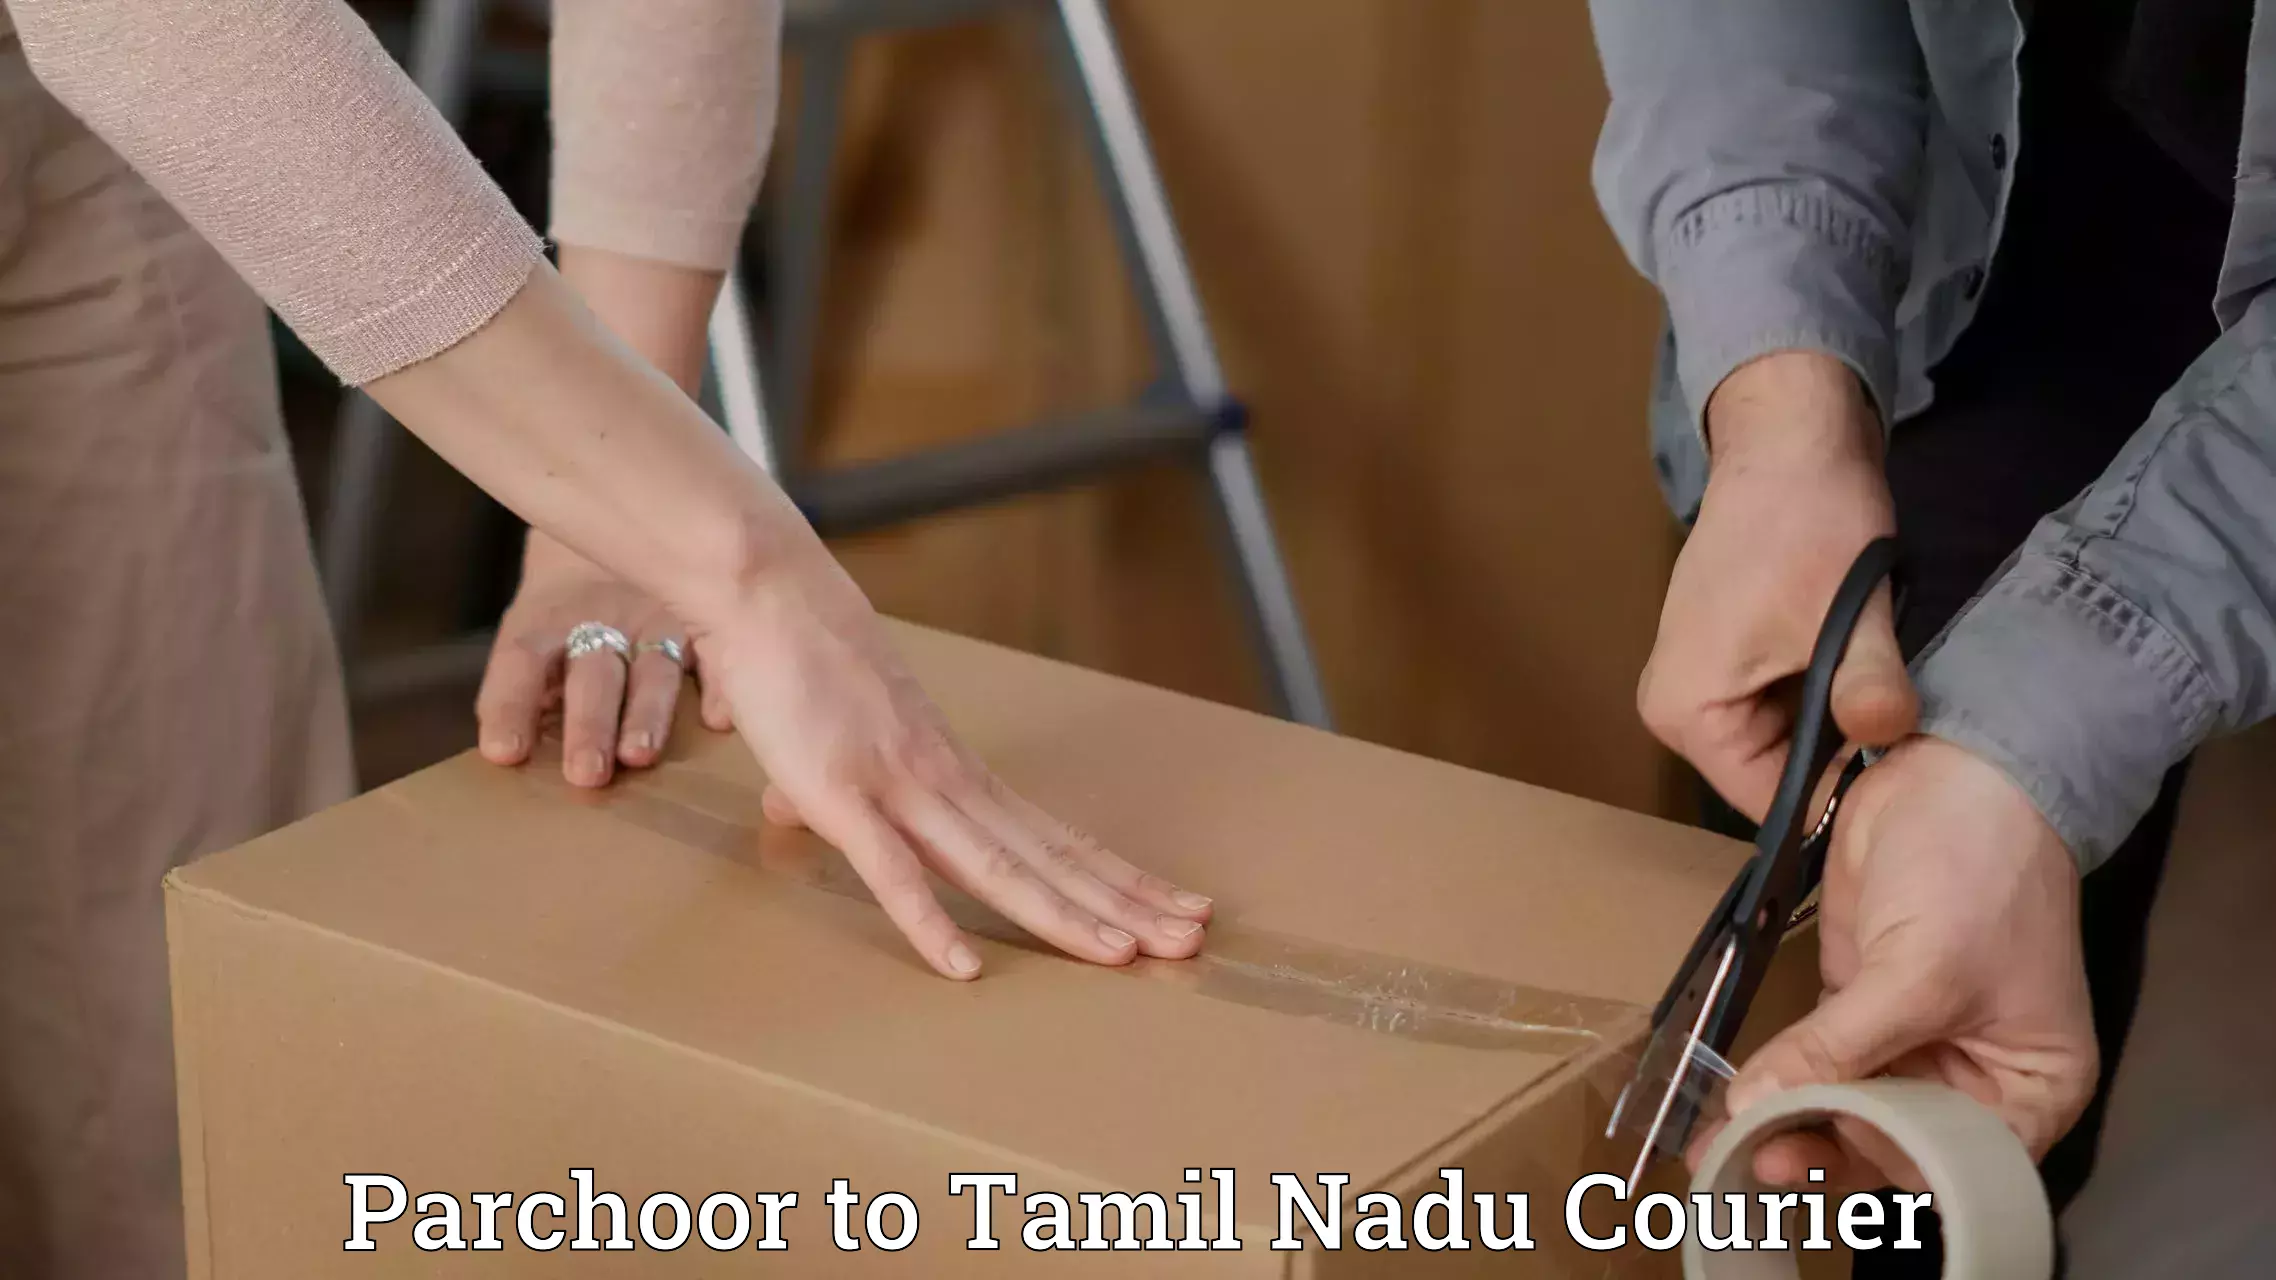 Next-generation courier services Parchoor to Tamil Nadu